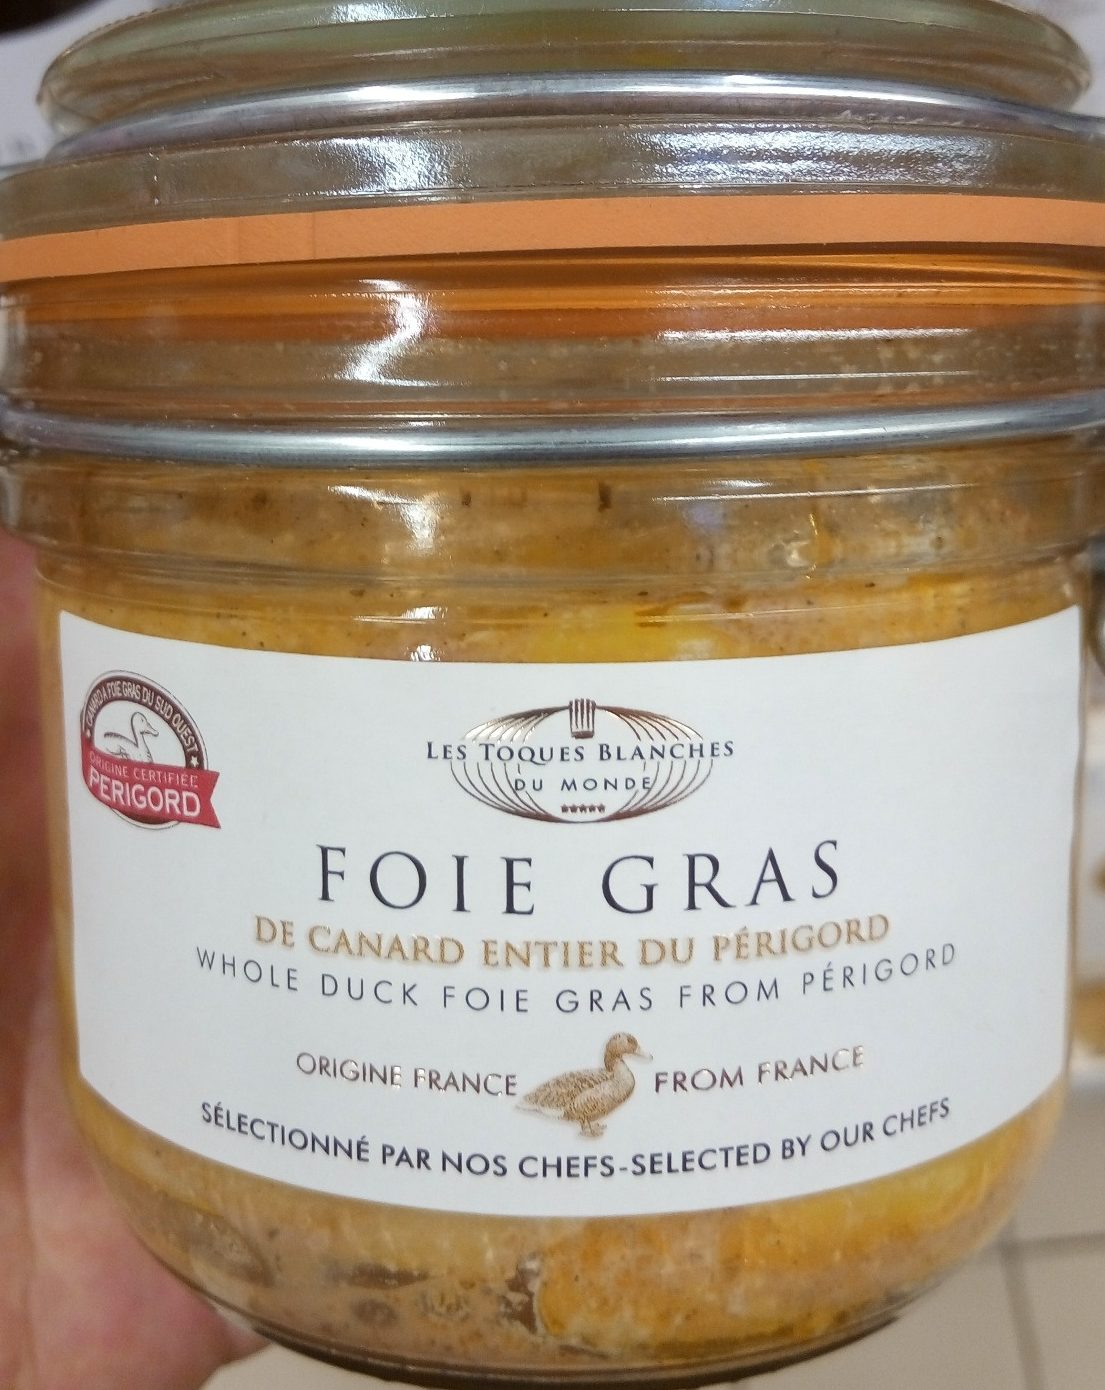 Foie gras de canard entier du Périgord - Product - fr